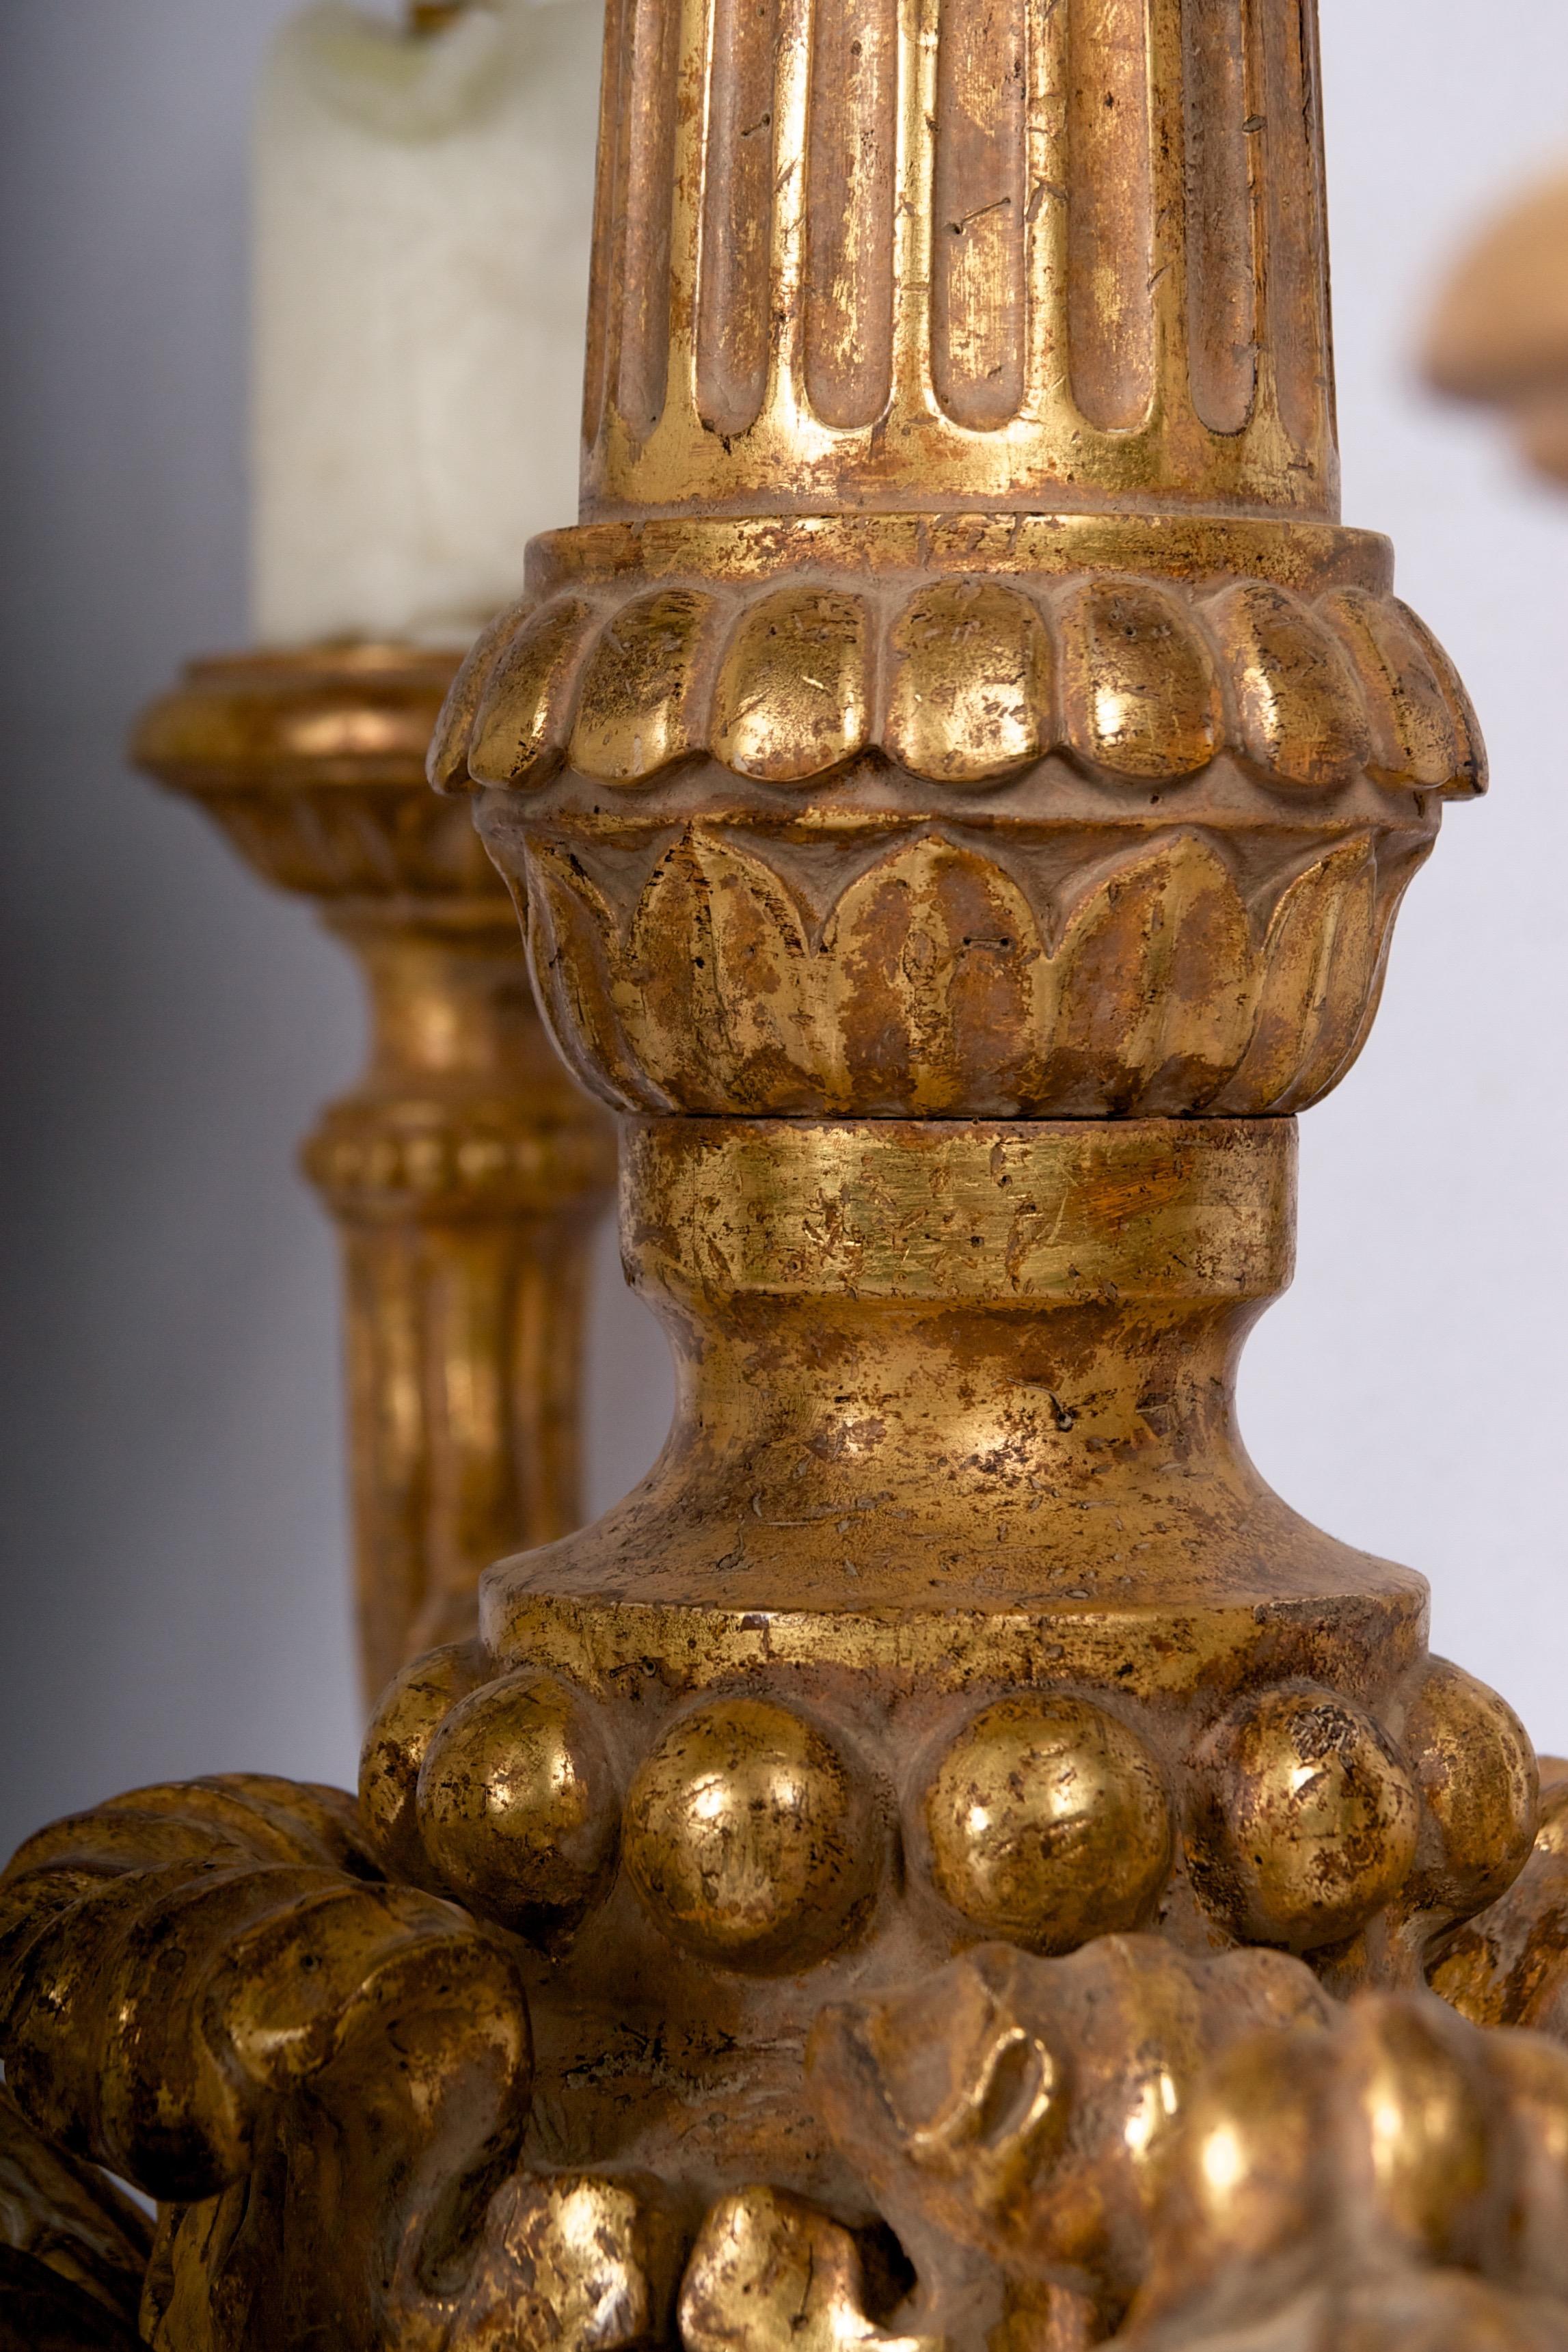 Un très grand lustre sculpté et doré à la main, avec une magnifique cire.
manches de chandelle et forme très équilibrée.